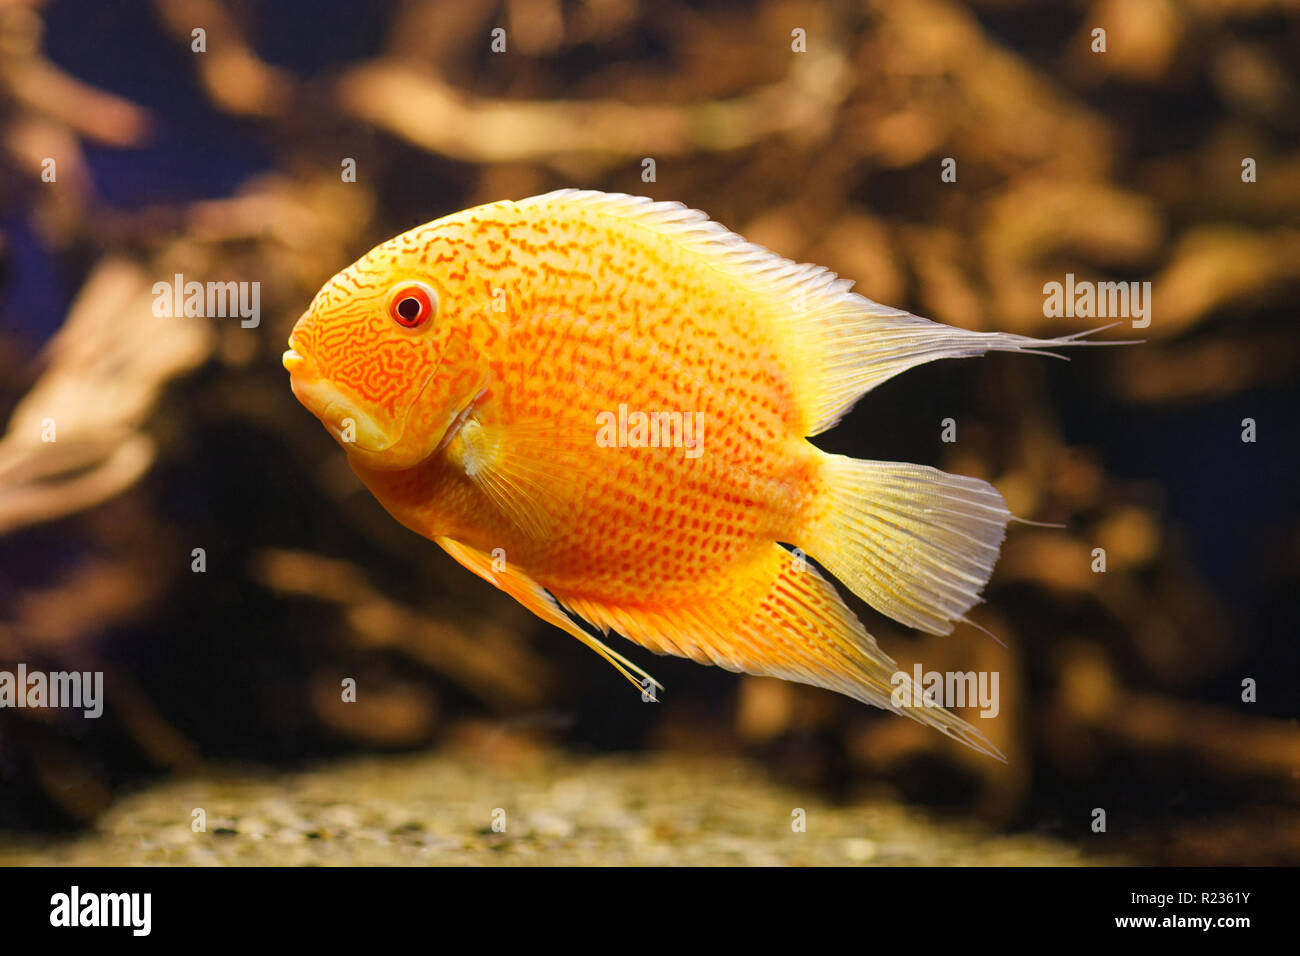 Aquarium fish Cichlasoma severum in aquatic plants. Stock Photo